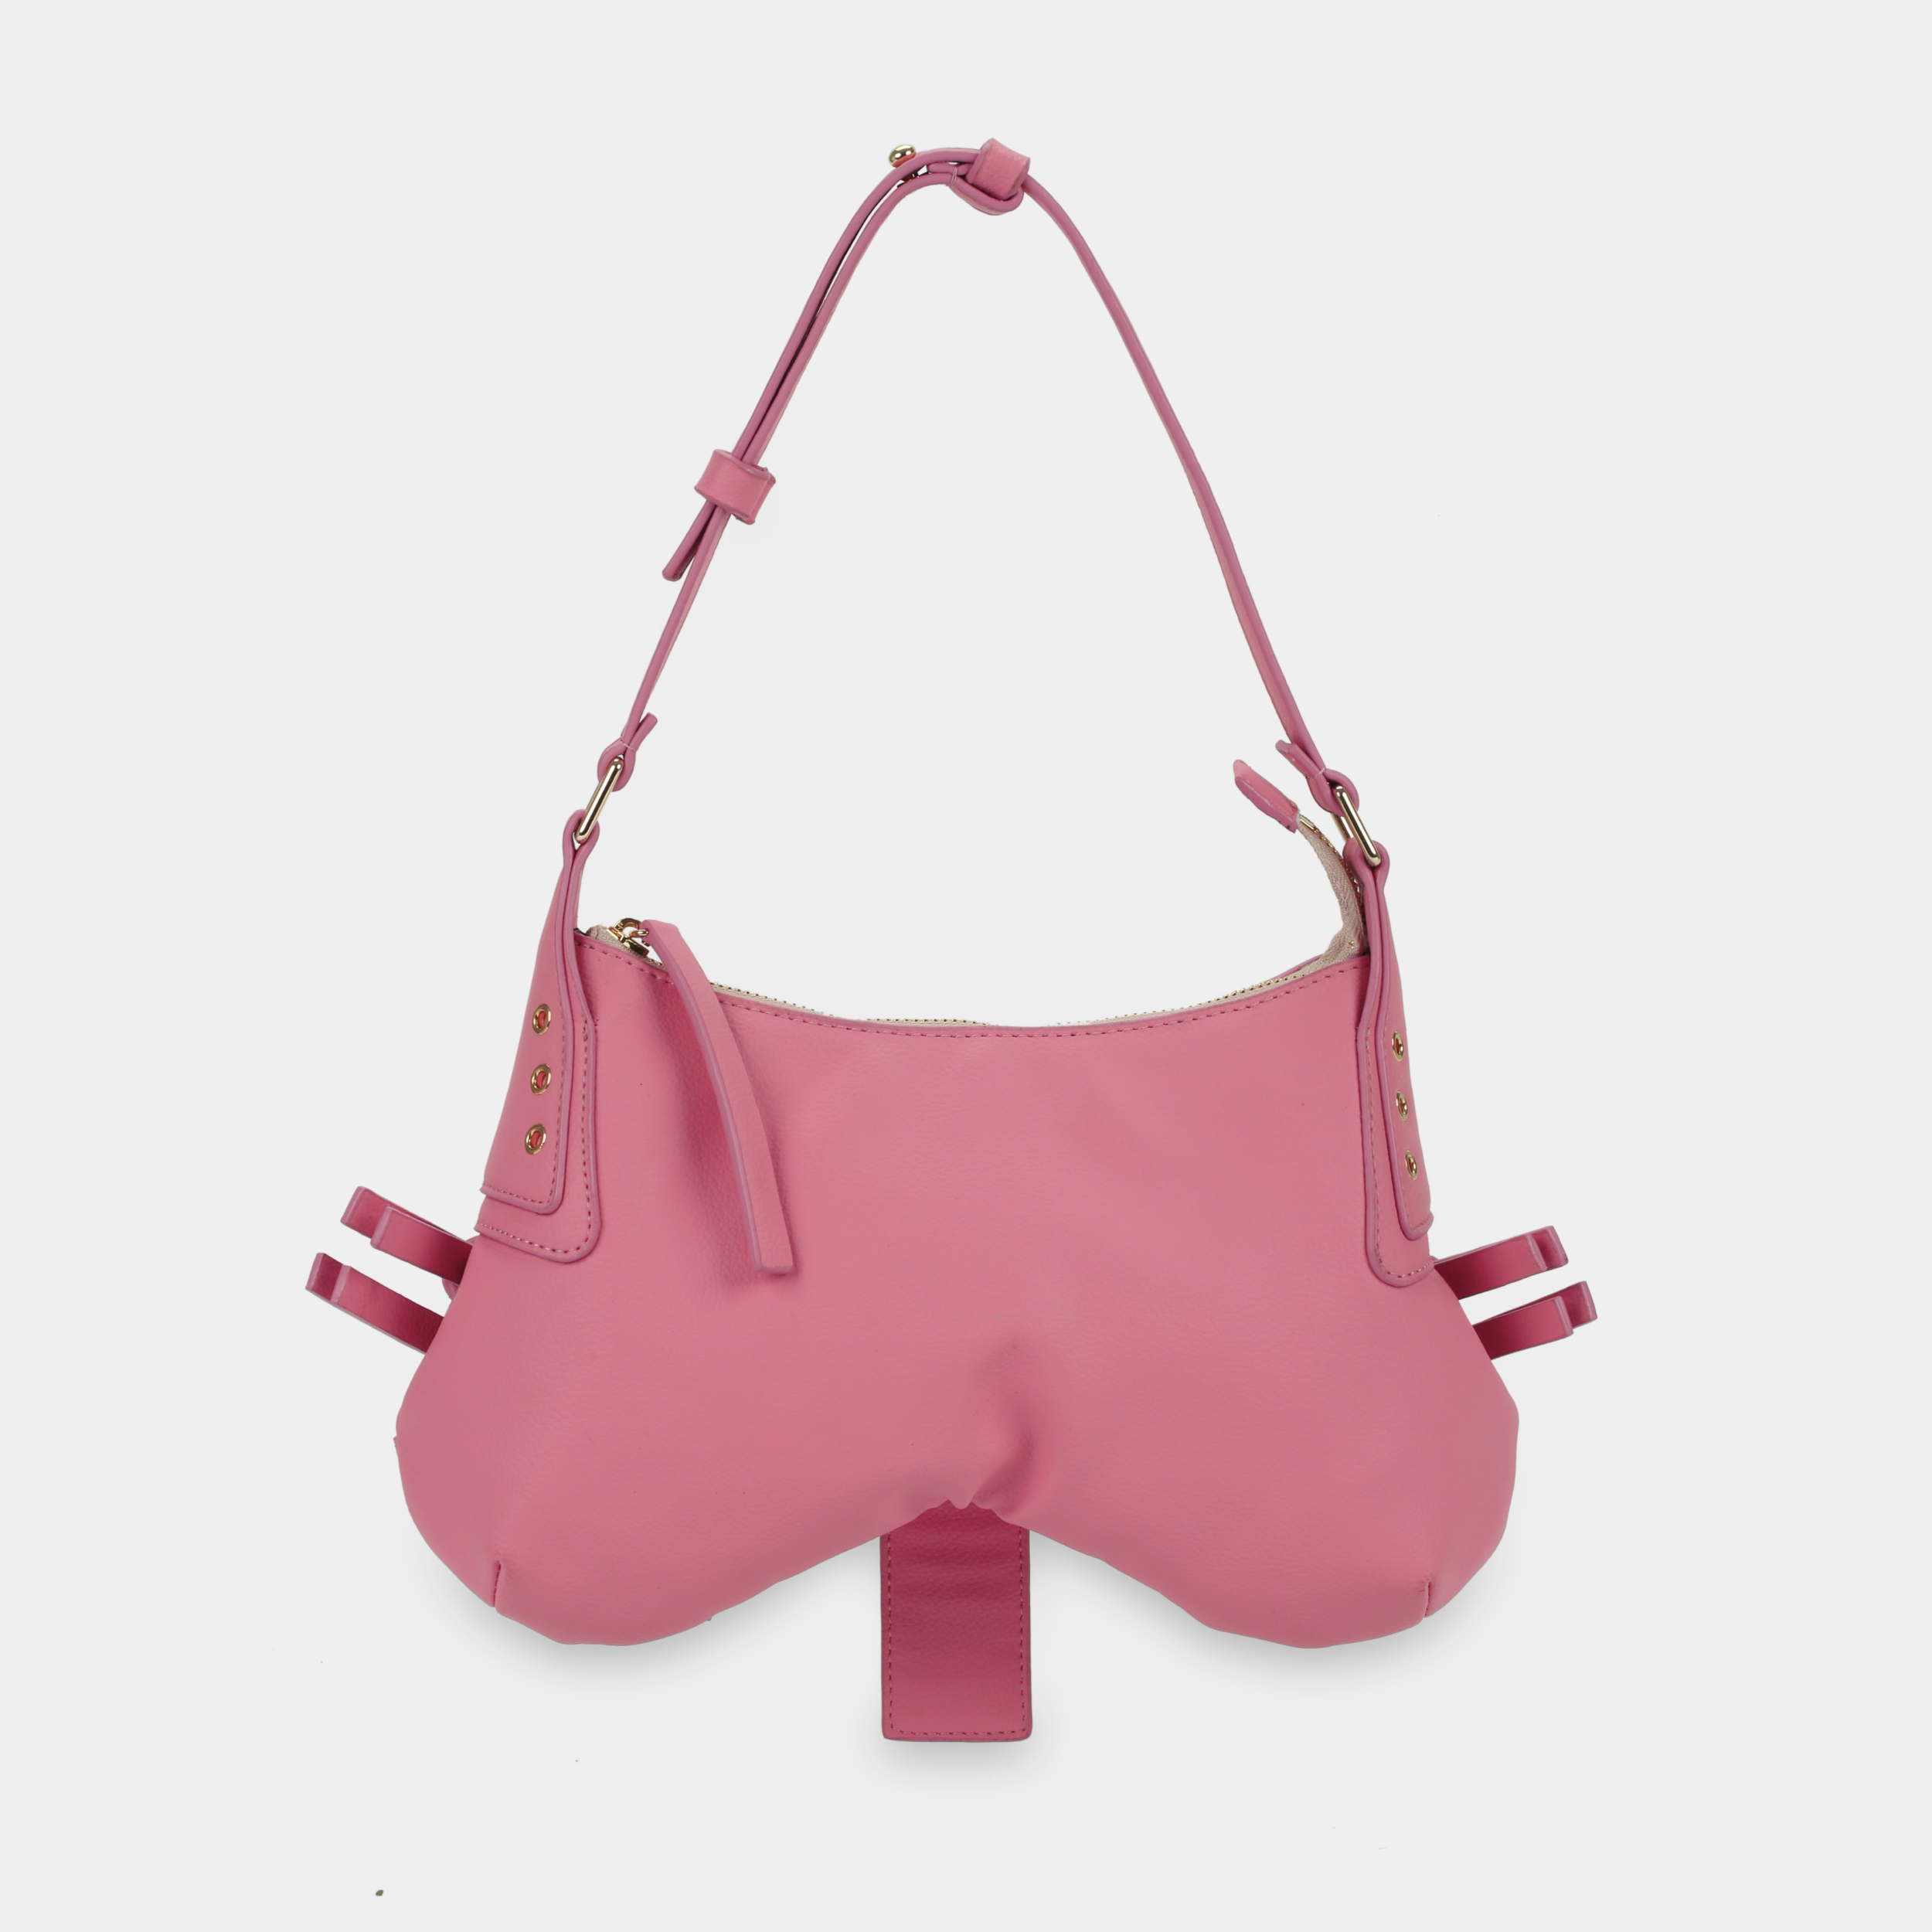 Túi xách BUTTERFLY màu hồng pastel